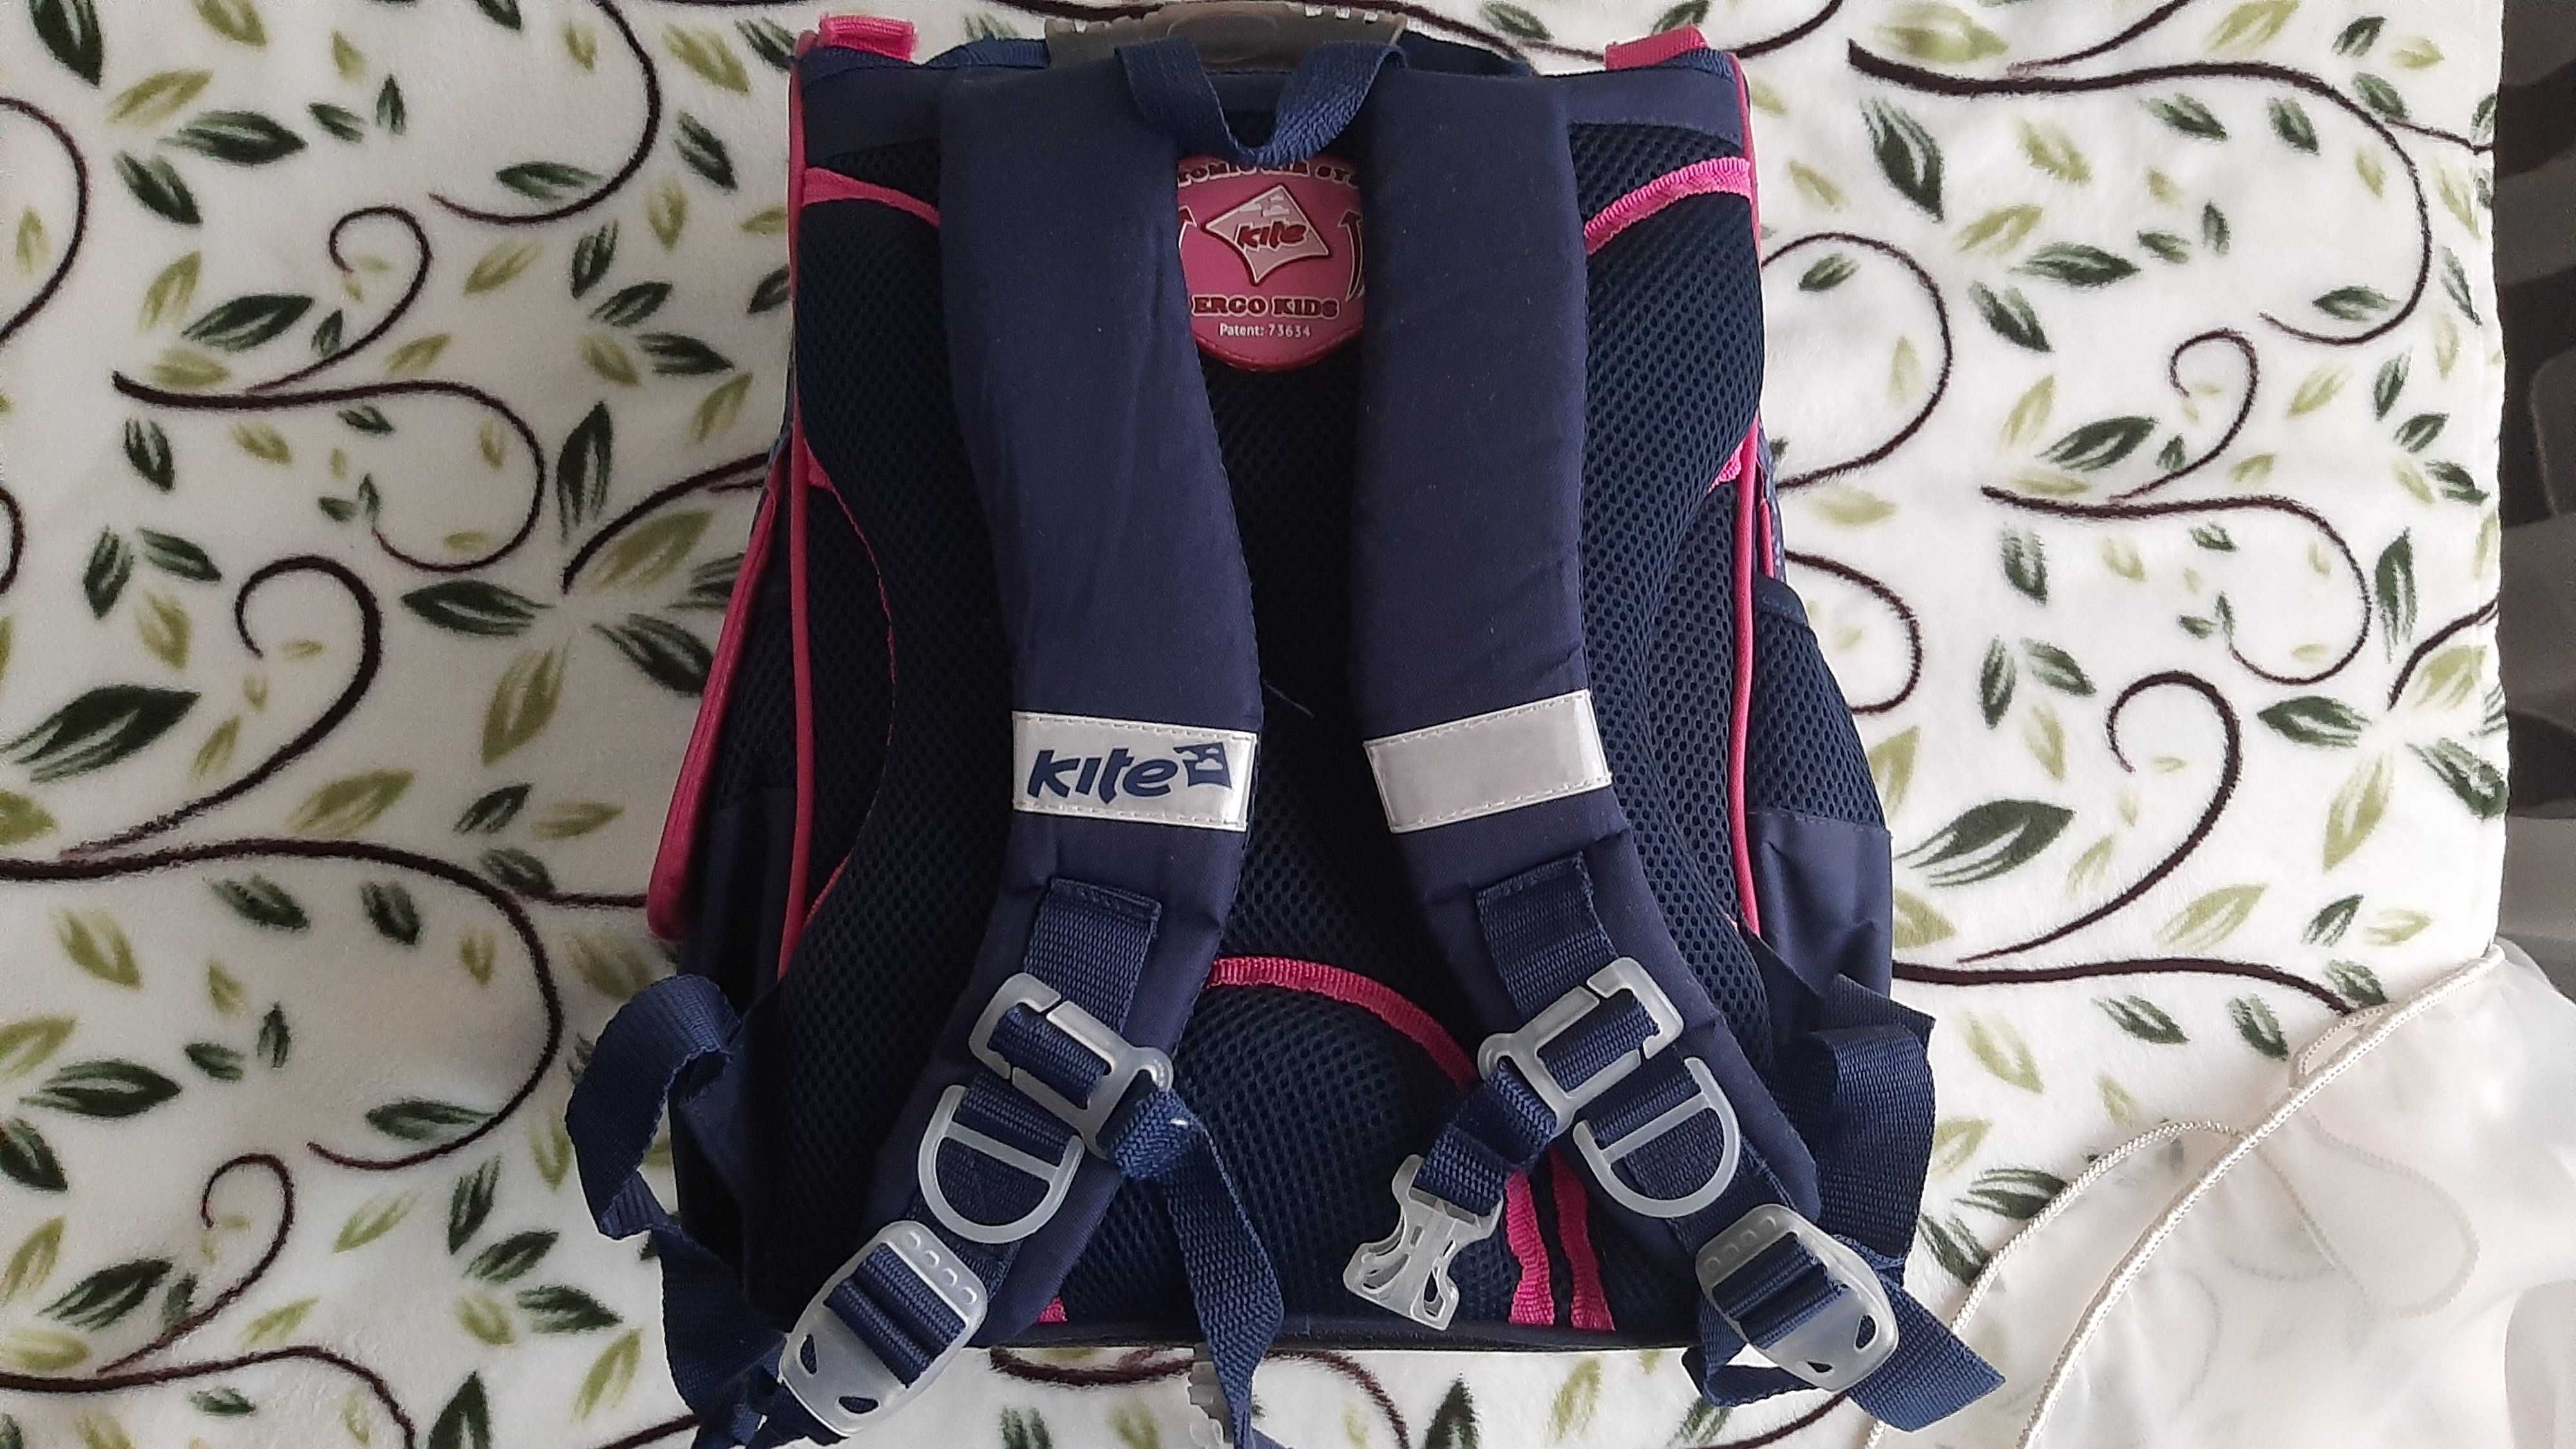 Рюкзак ранец портфель для младшей школы пр-во Kite